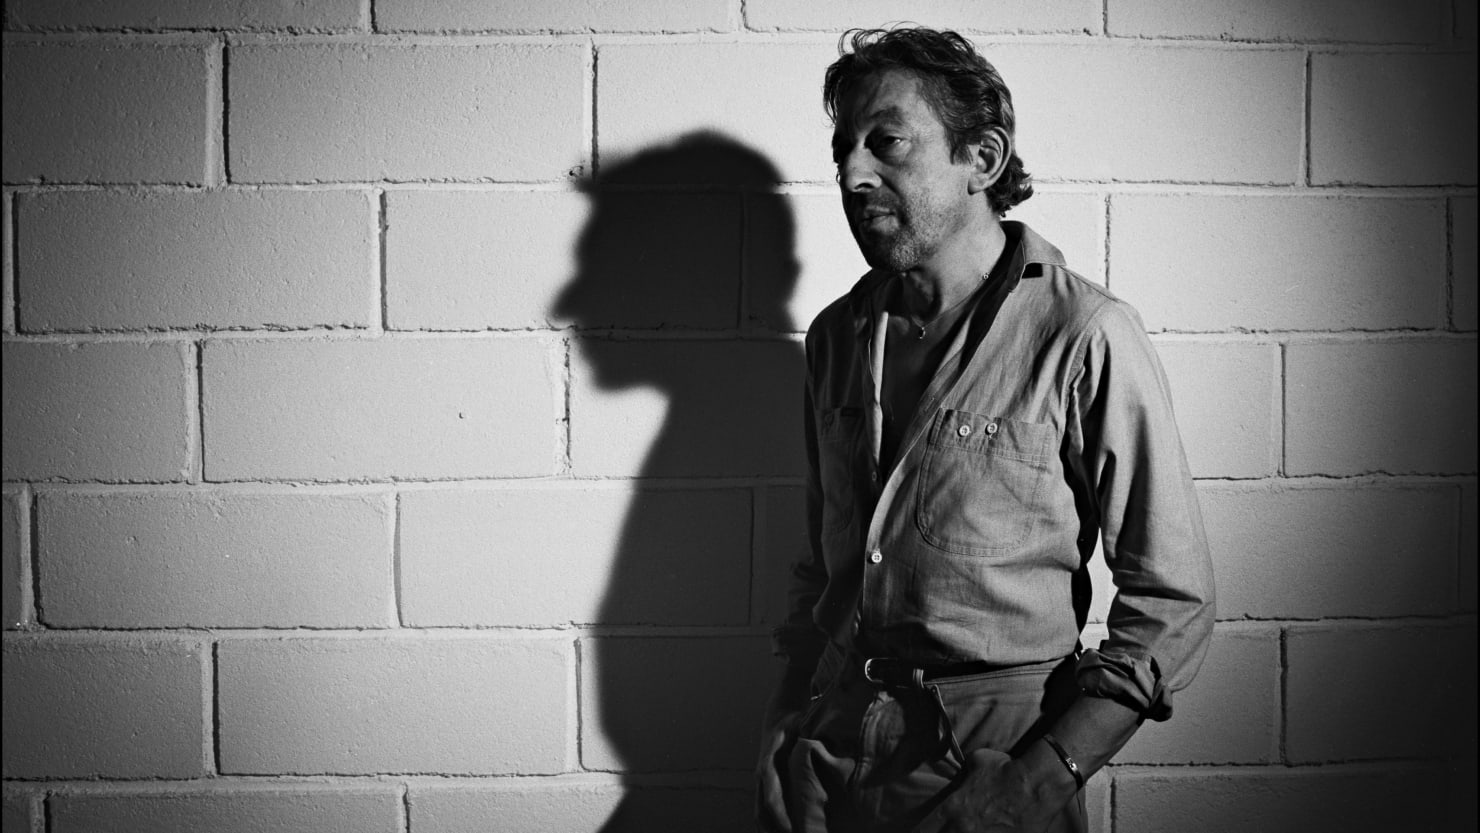 El cantante Serge Gainsbourg promovió el incesto y la pedofilia.  Ahora está siendo honrado.